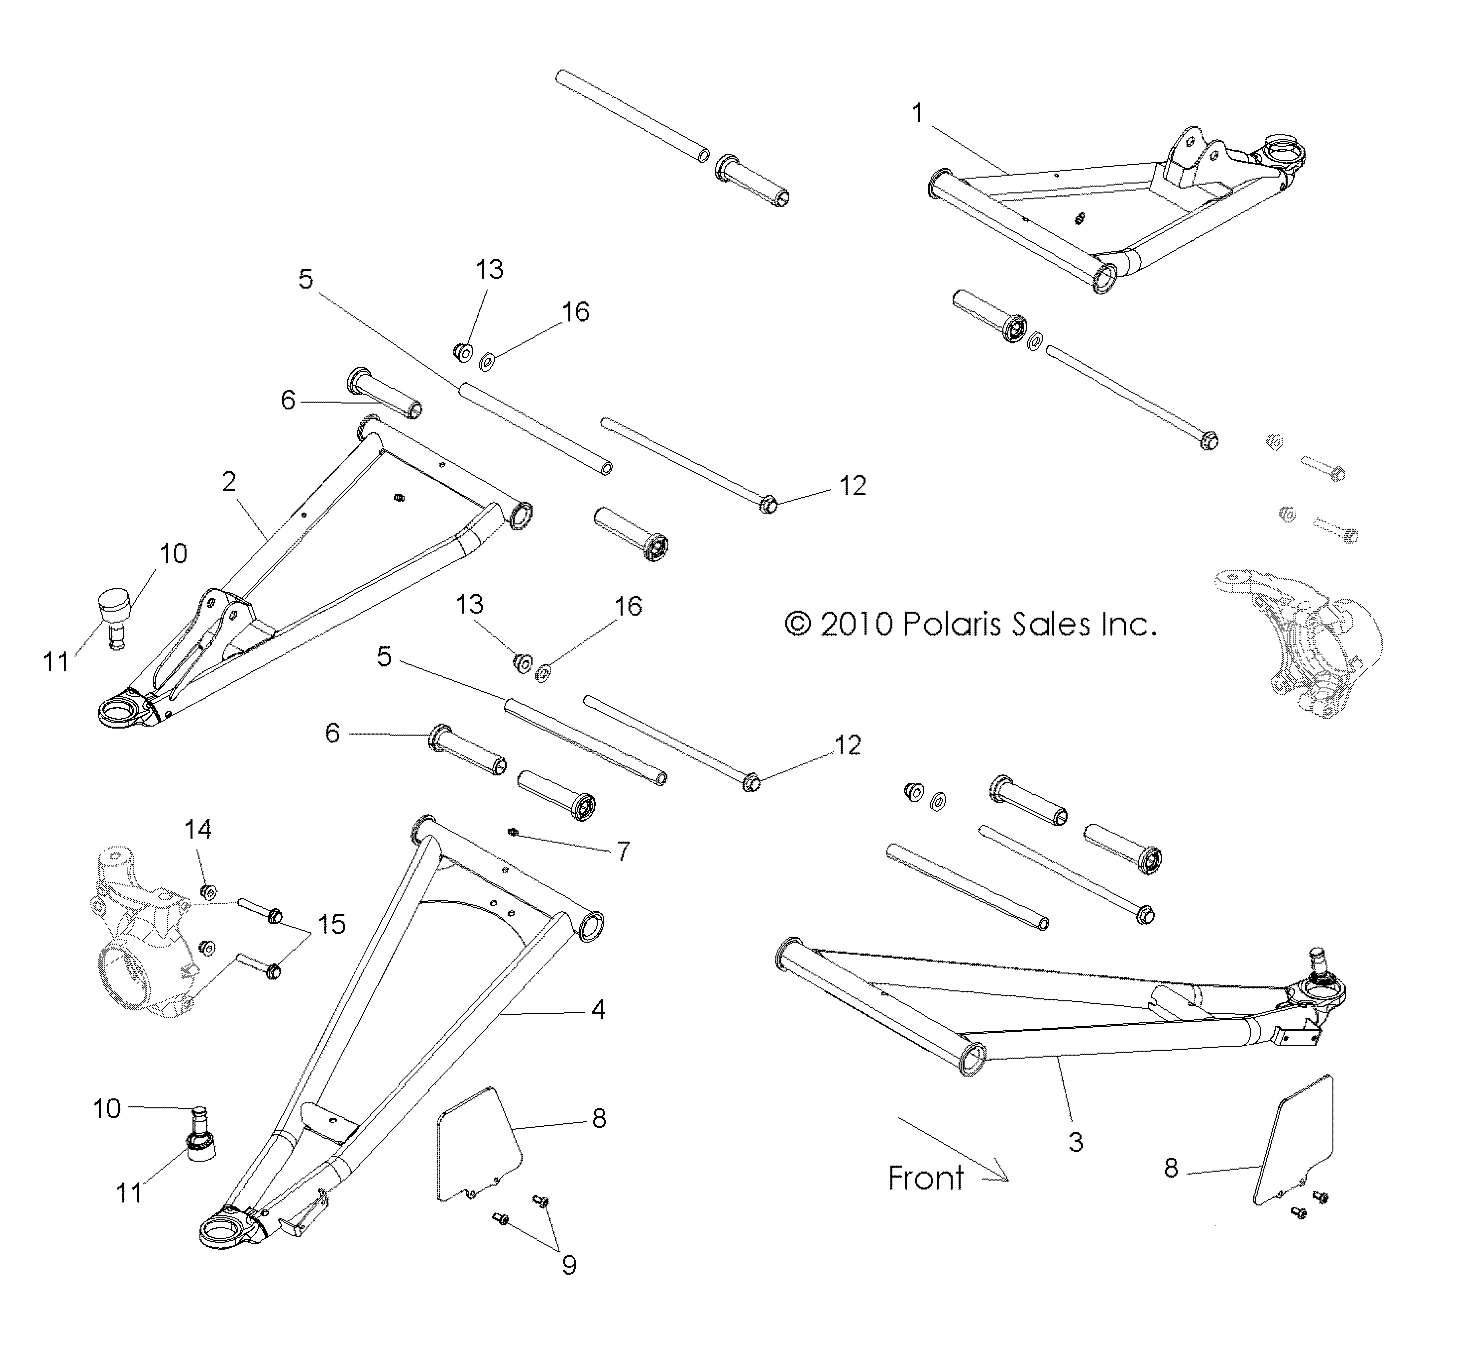 Foto diagrama Polaris que contem a peça 1017577-458